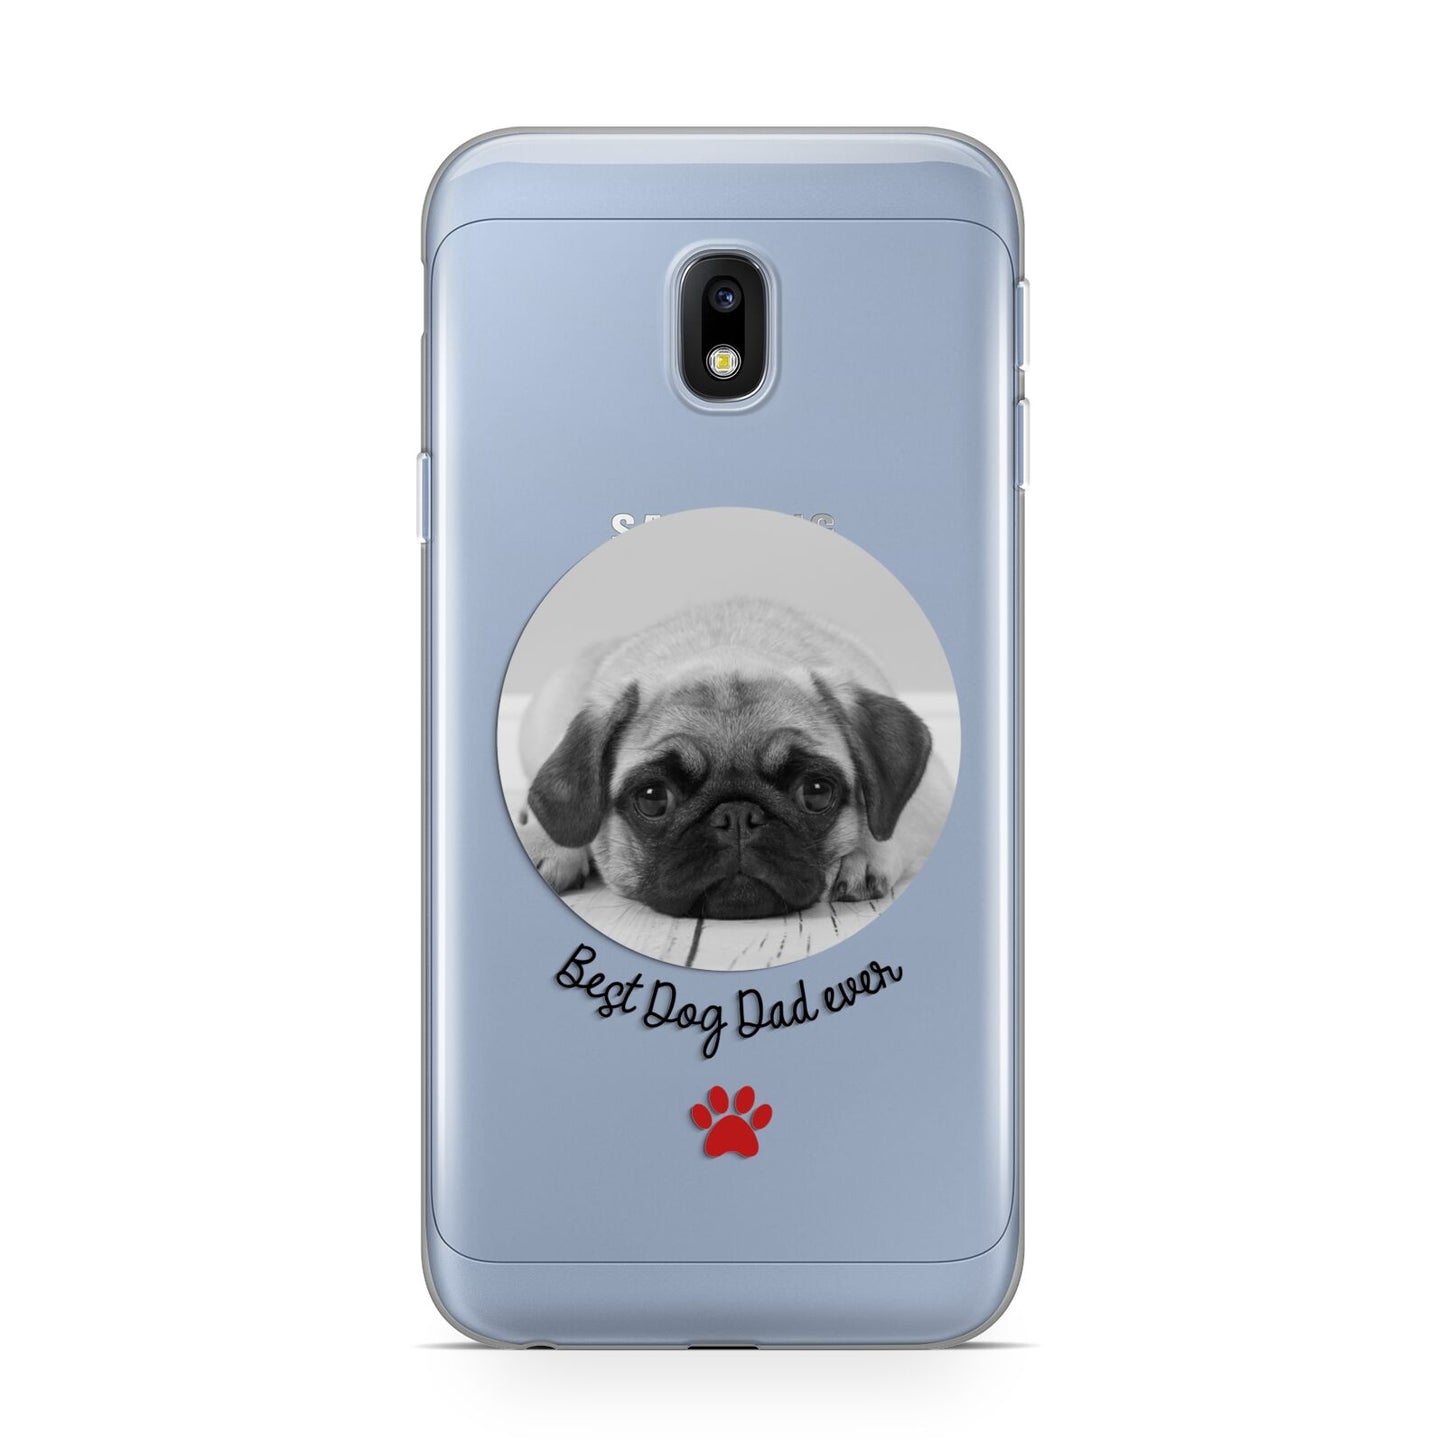 Best Dog Dad Ever Photo Upload Samsung Galaxy J3 2017 Case